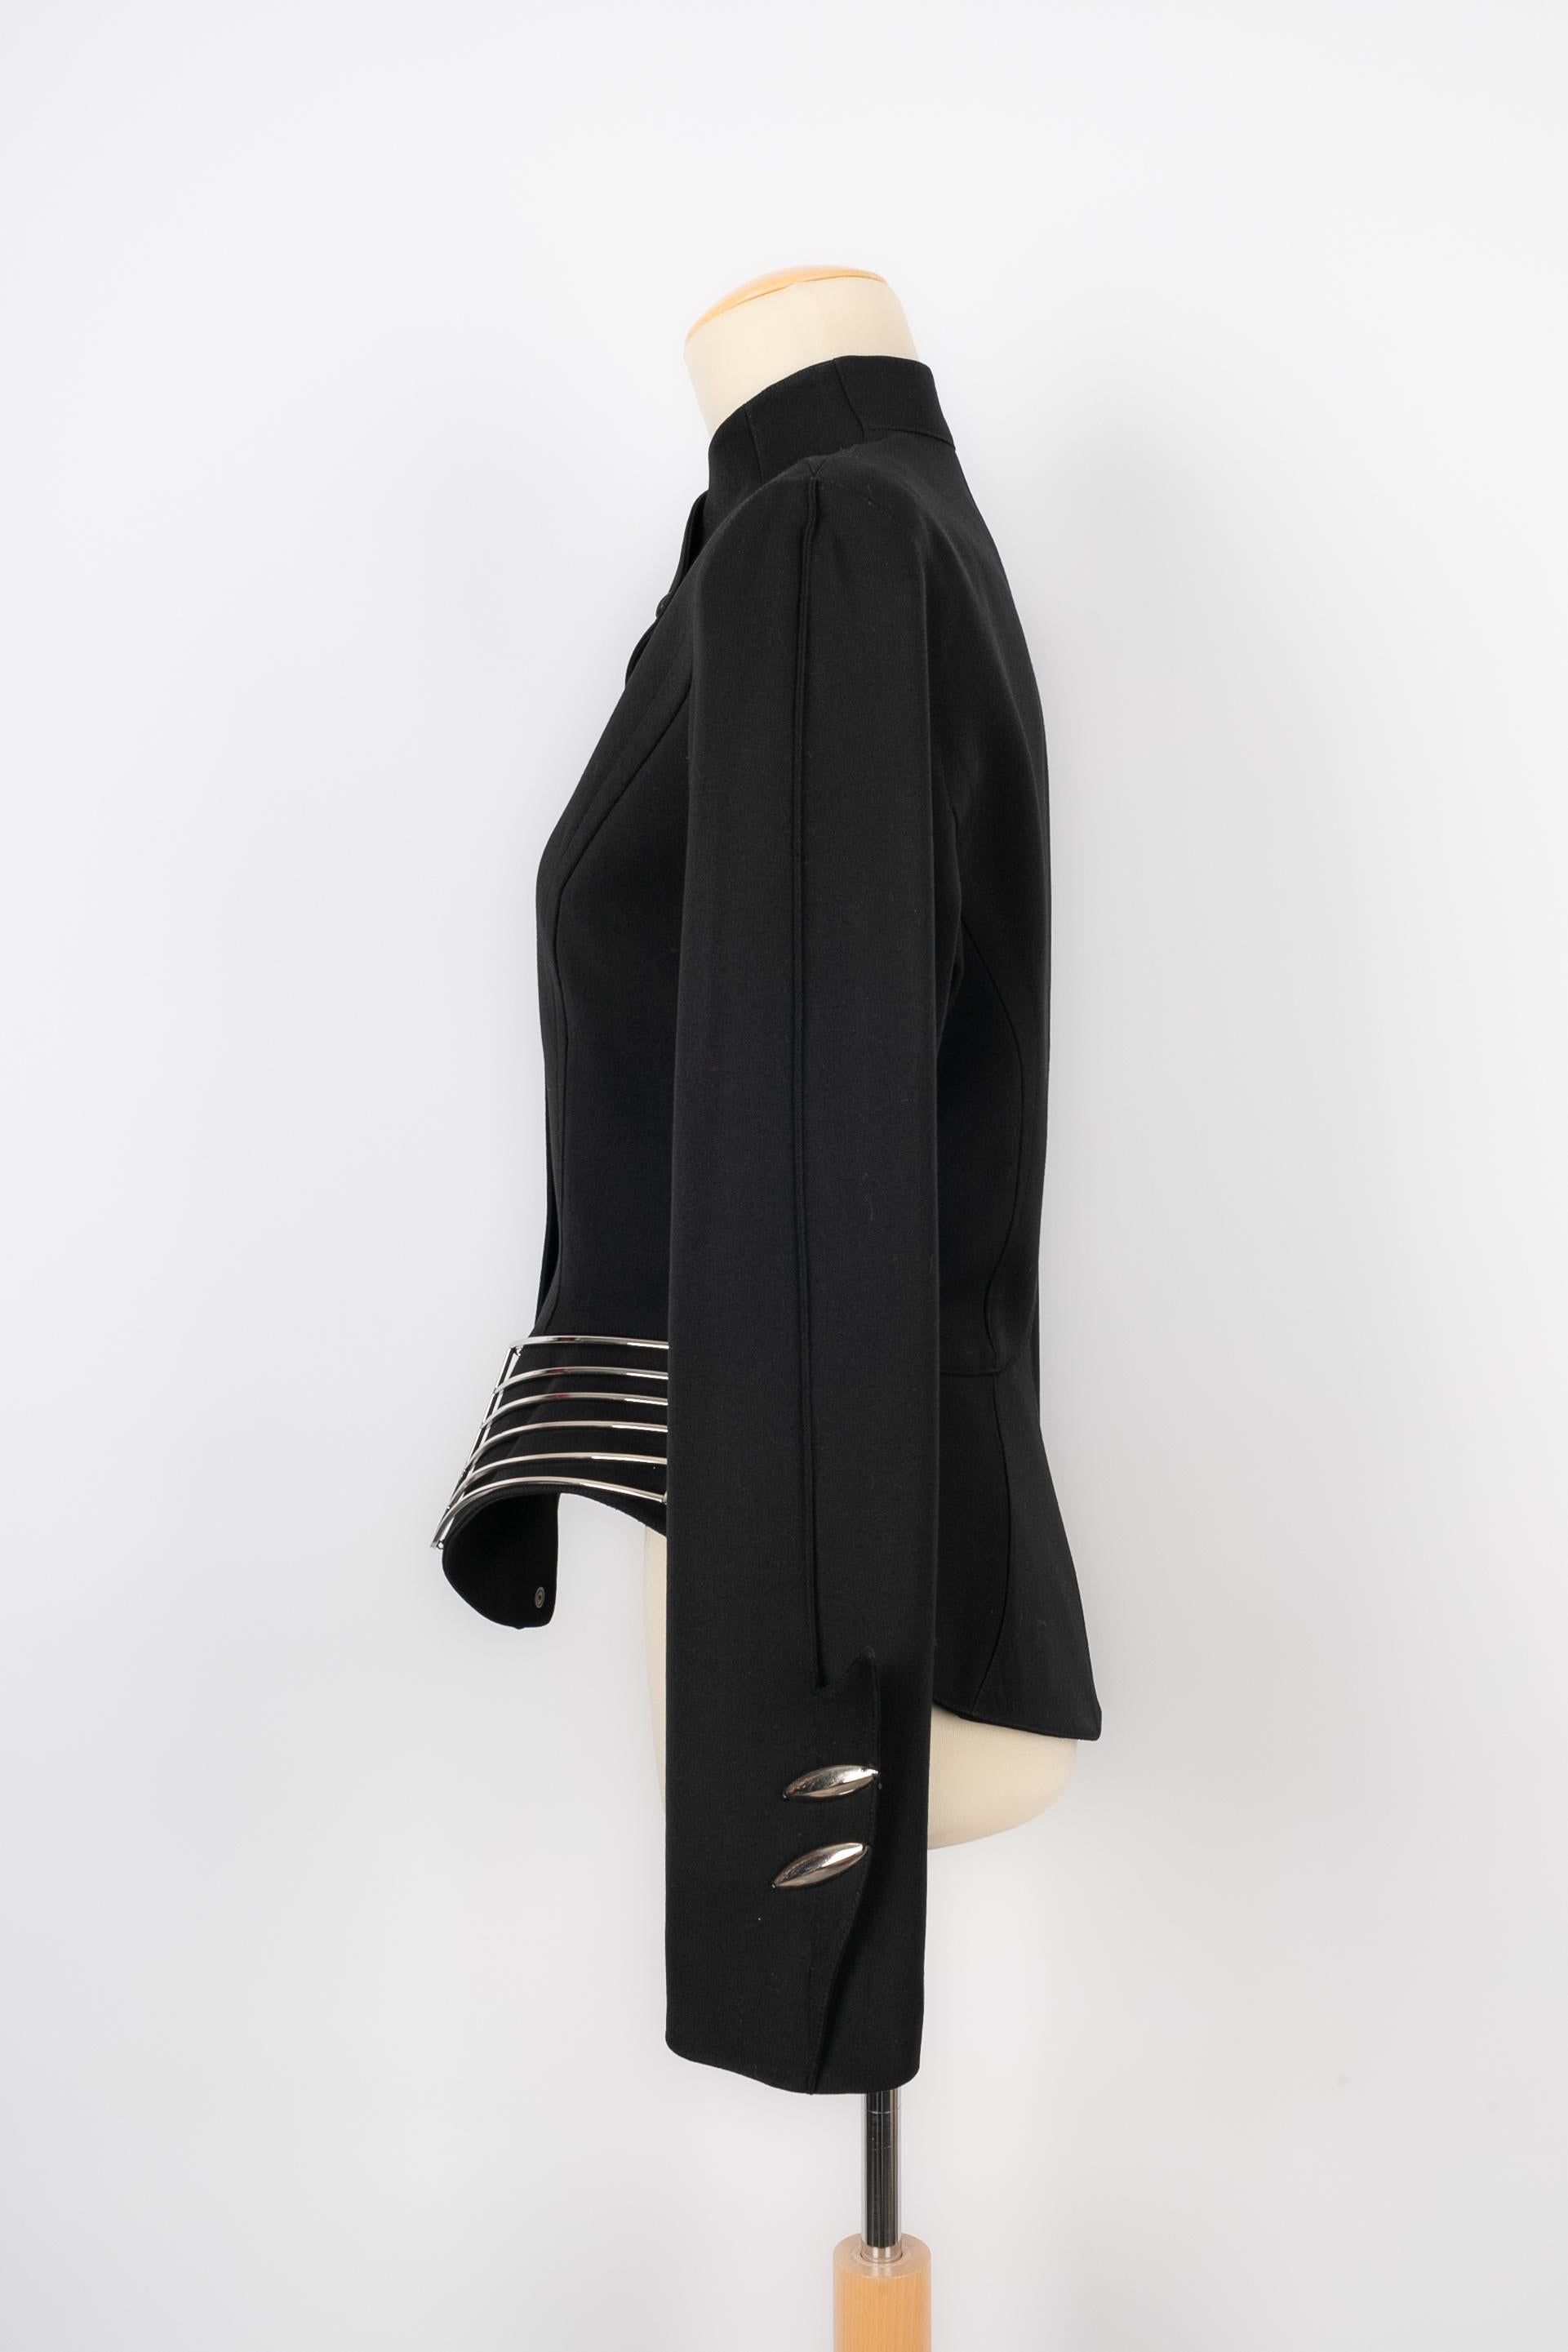 THIERRY MUGLER - (Fabriqué en France) Veste en laine noire avec éléments en métal argenté. Taille 38FR.

Condit :
Très bon état.

Dimensions :
Largeur des épaules : 44 cm - Longueur des manches : 63 cm - Longueur : 60 cm

FV43